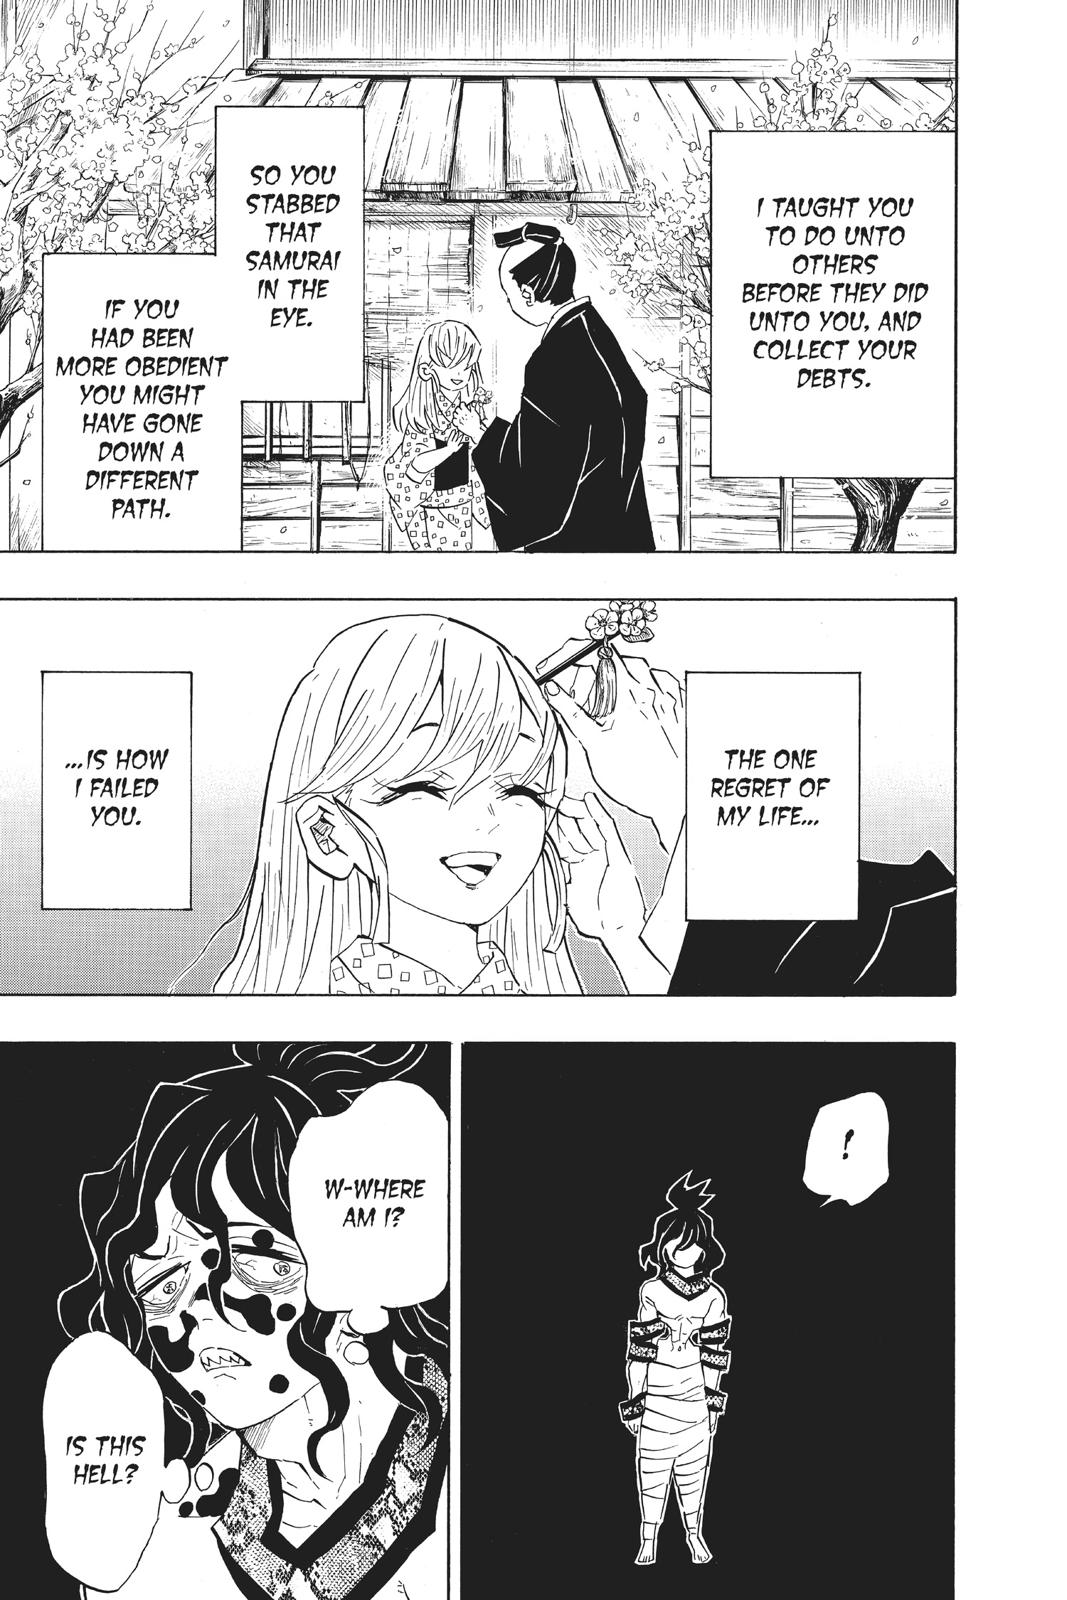 Demon Slayer Manga Manga Chapter - 97 - image 3